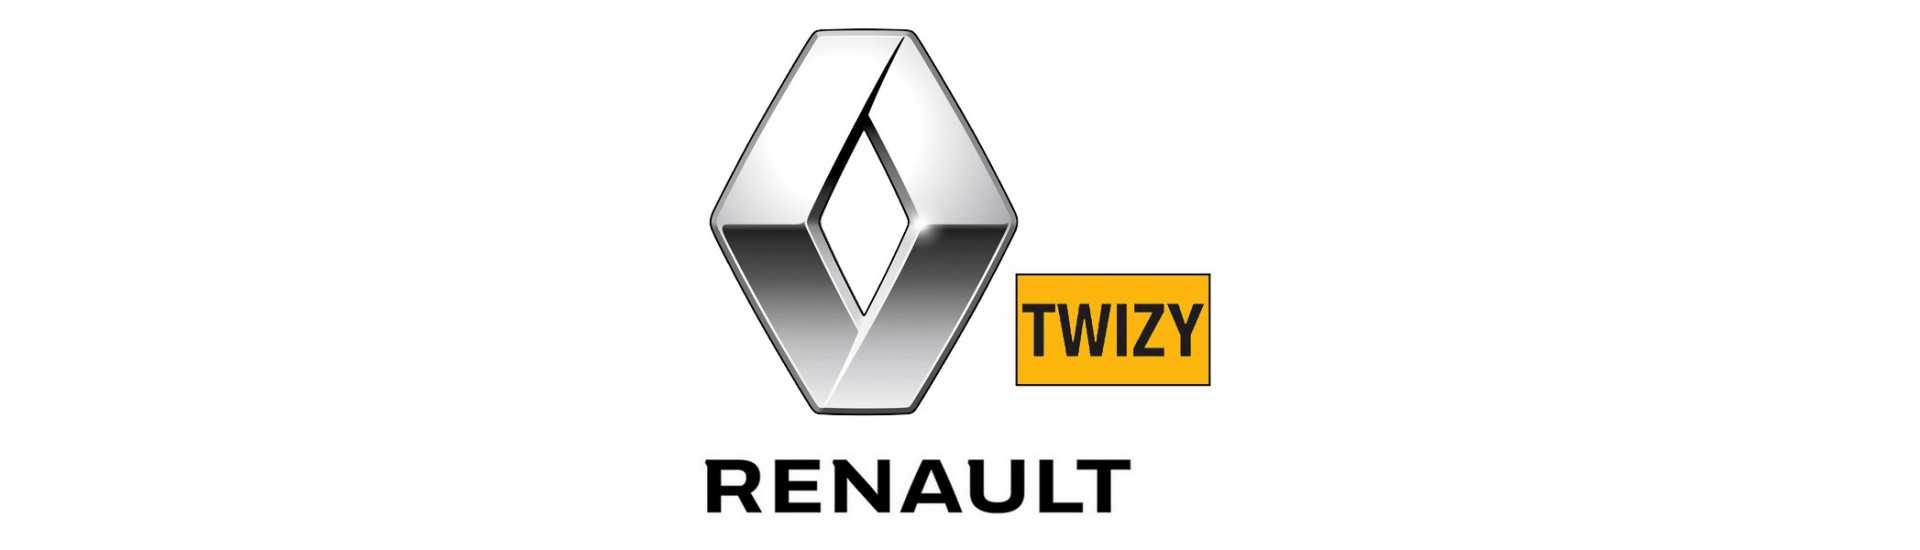 Quebra ao melhor preço para o carro sem uma permissão Renault Twizy